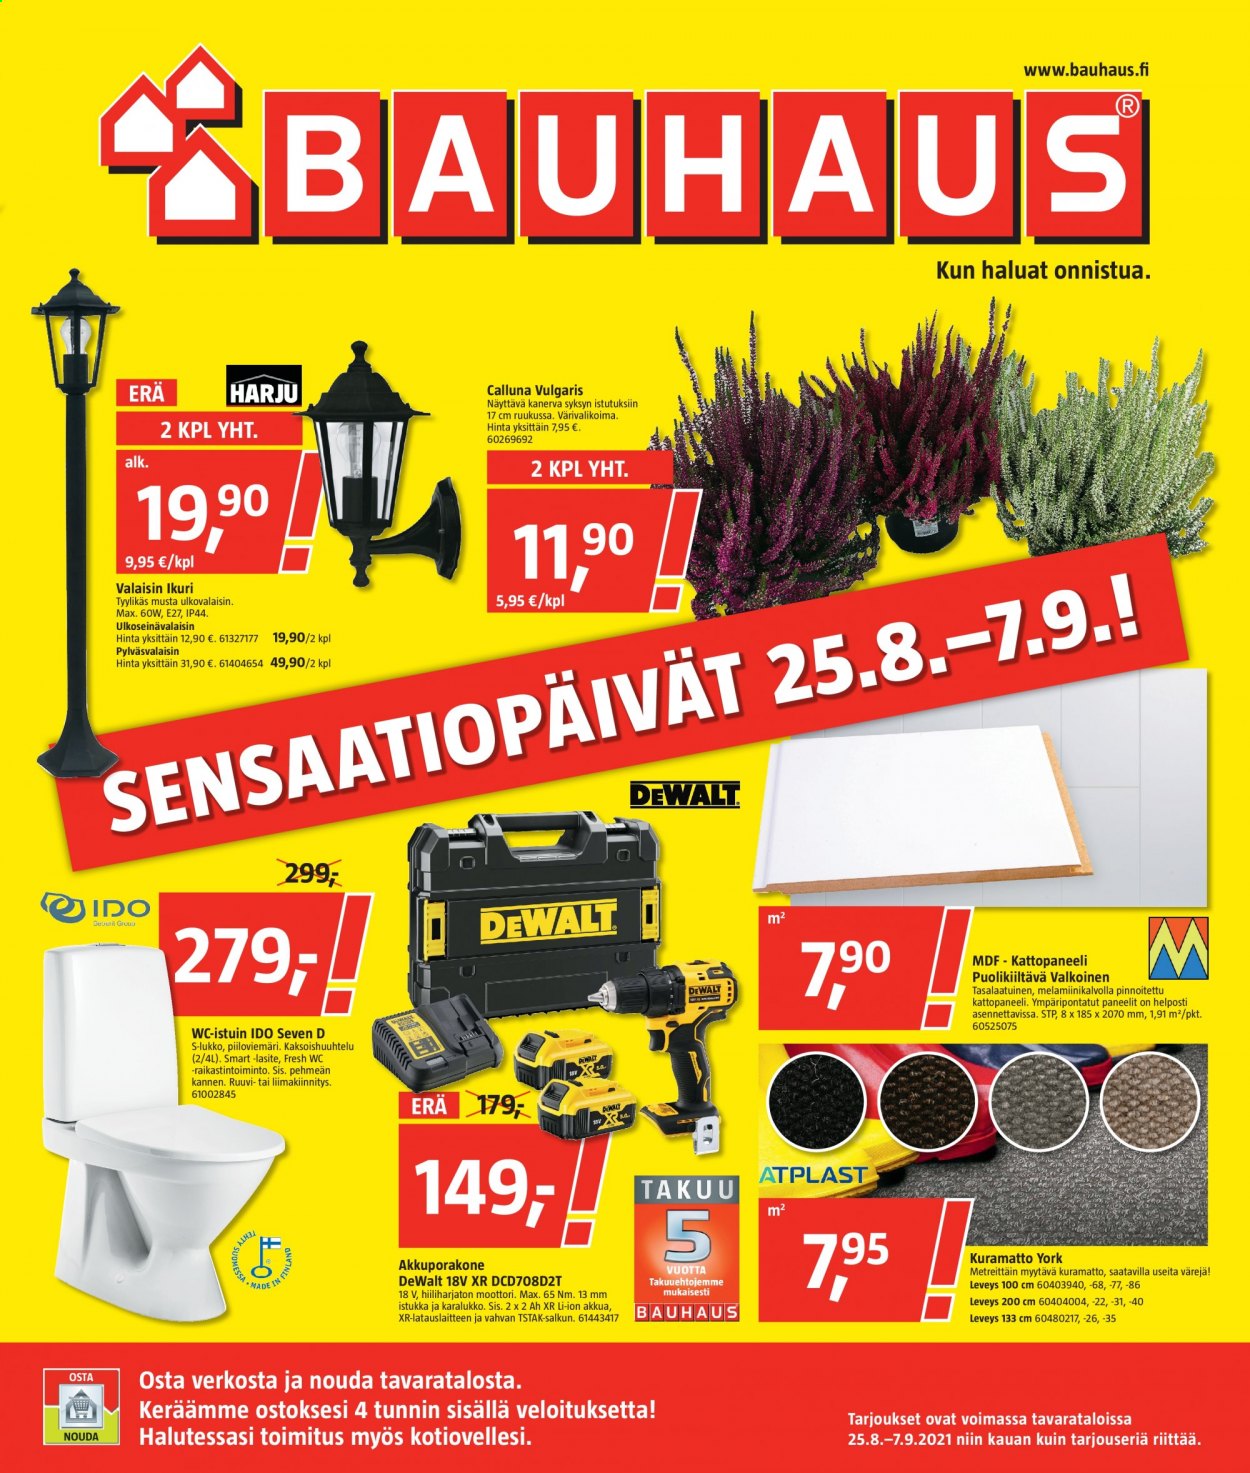 thumbnail - Bauhaus tarjoukset  - 25.08.2021 - 07.09.2021 - Tarjoustuotteet - kuramatto, wc-istuin, ulkoseinävalaisin, valaisin, akkuporakone. Sivu 1.